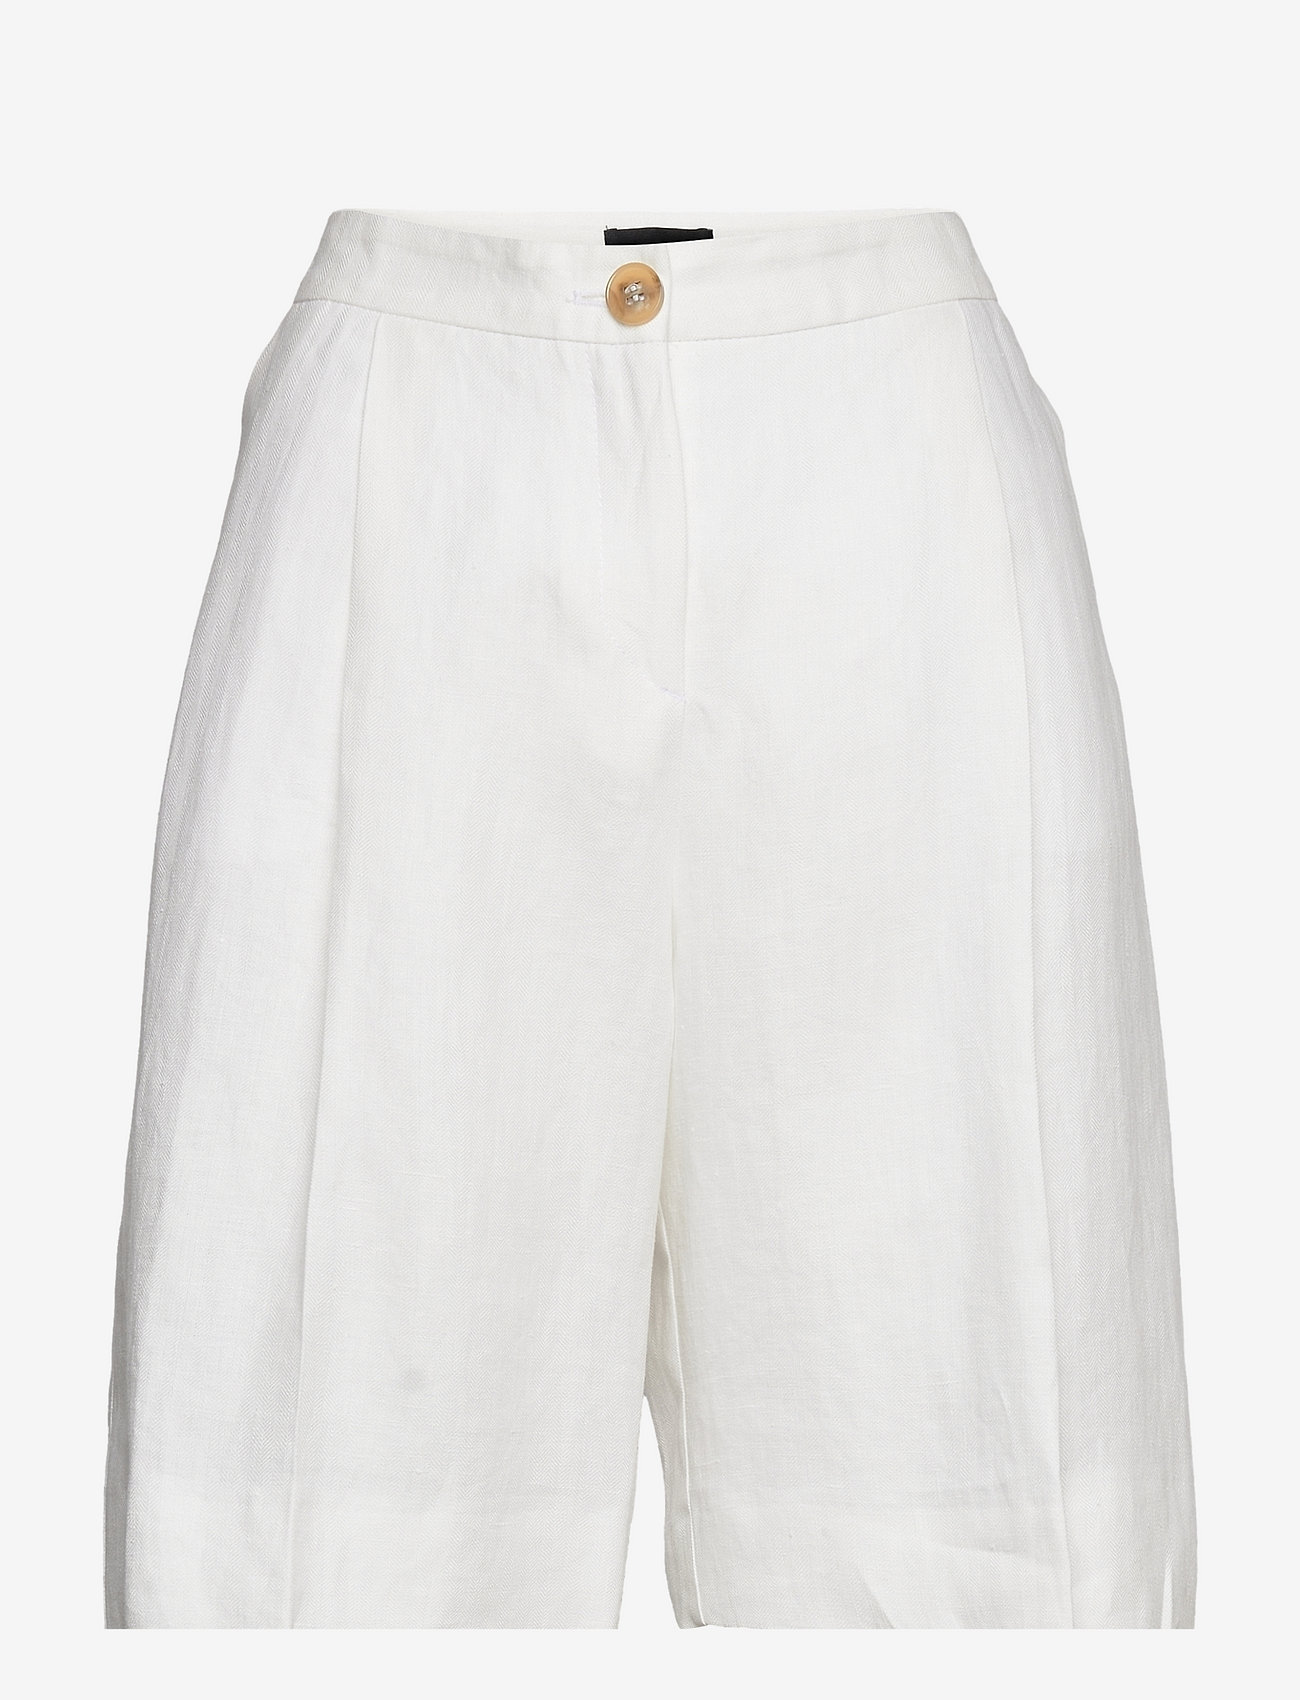 SAND - 6669 WW - Miriam Short - chino shorts - optical white - 0